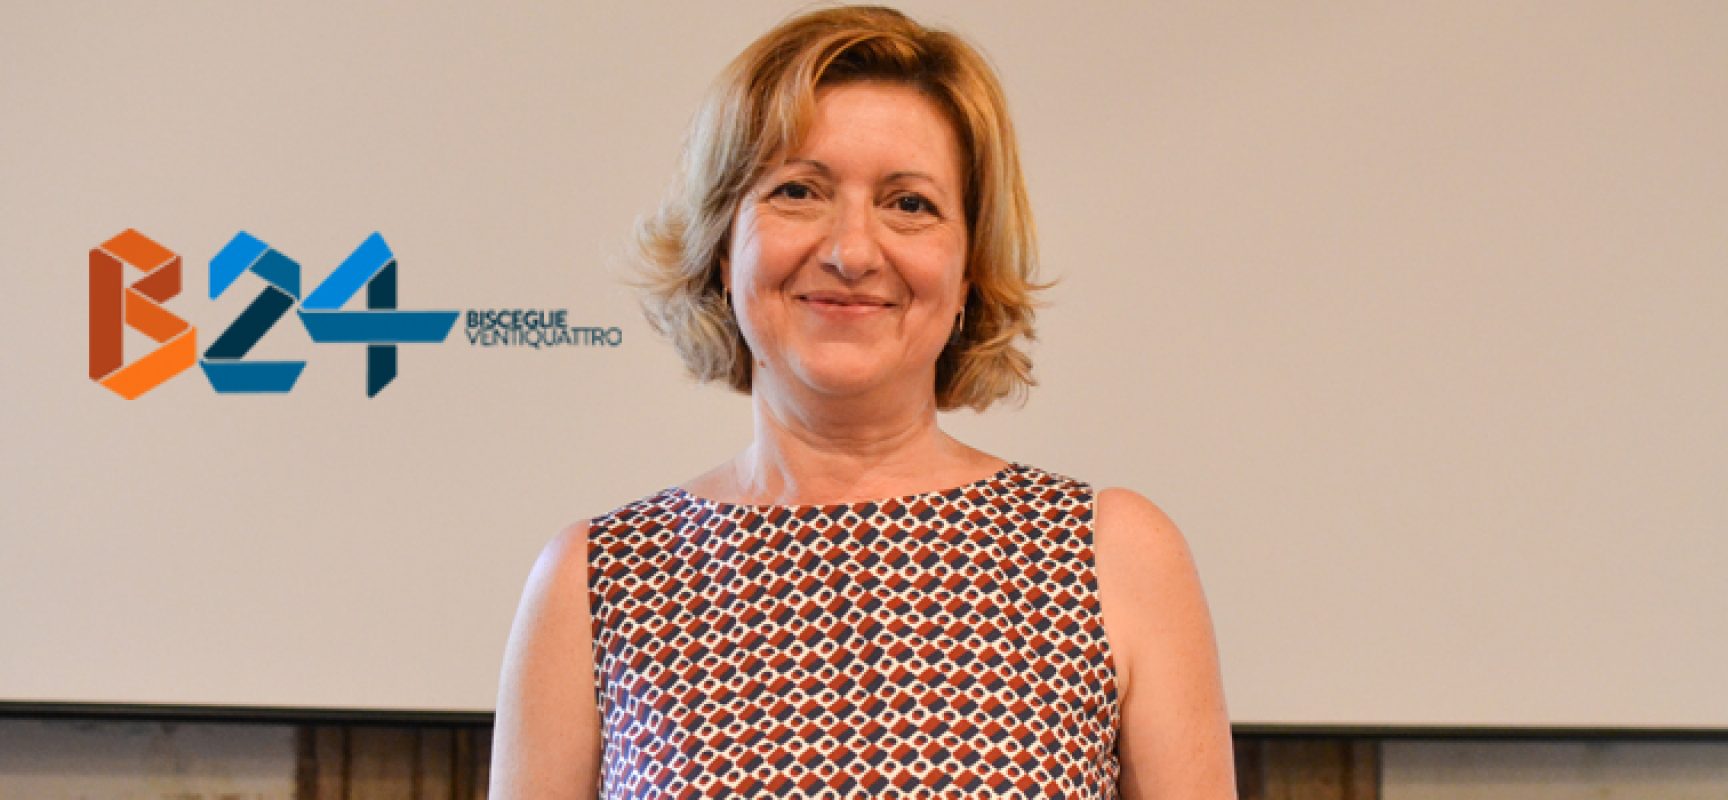 Tonia Spina rassegna dimissioni da Assessore al Comune, “Ruolo in Fratelli d’Italia impone corerenza”